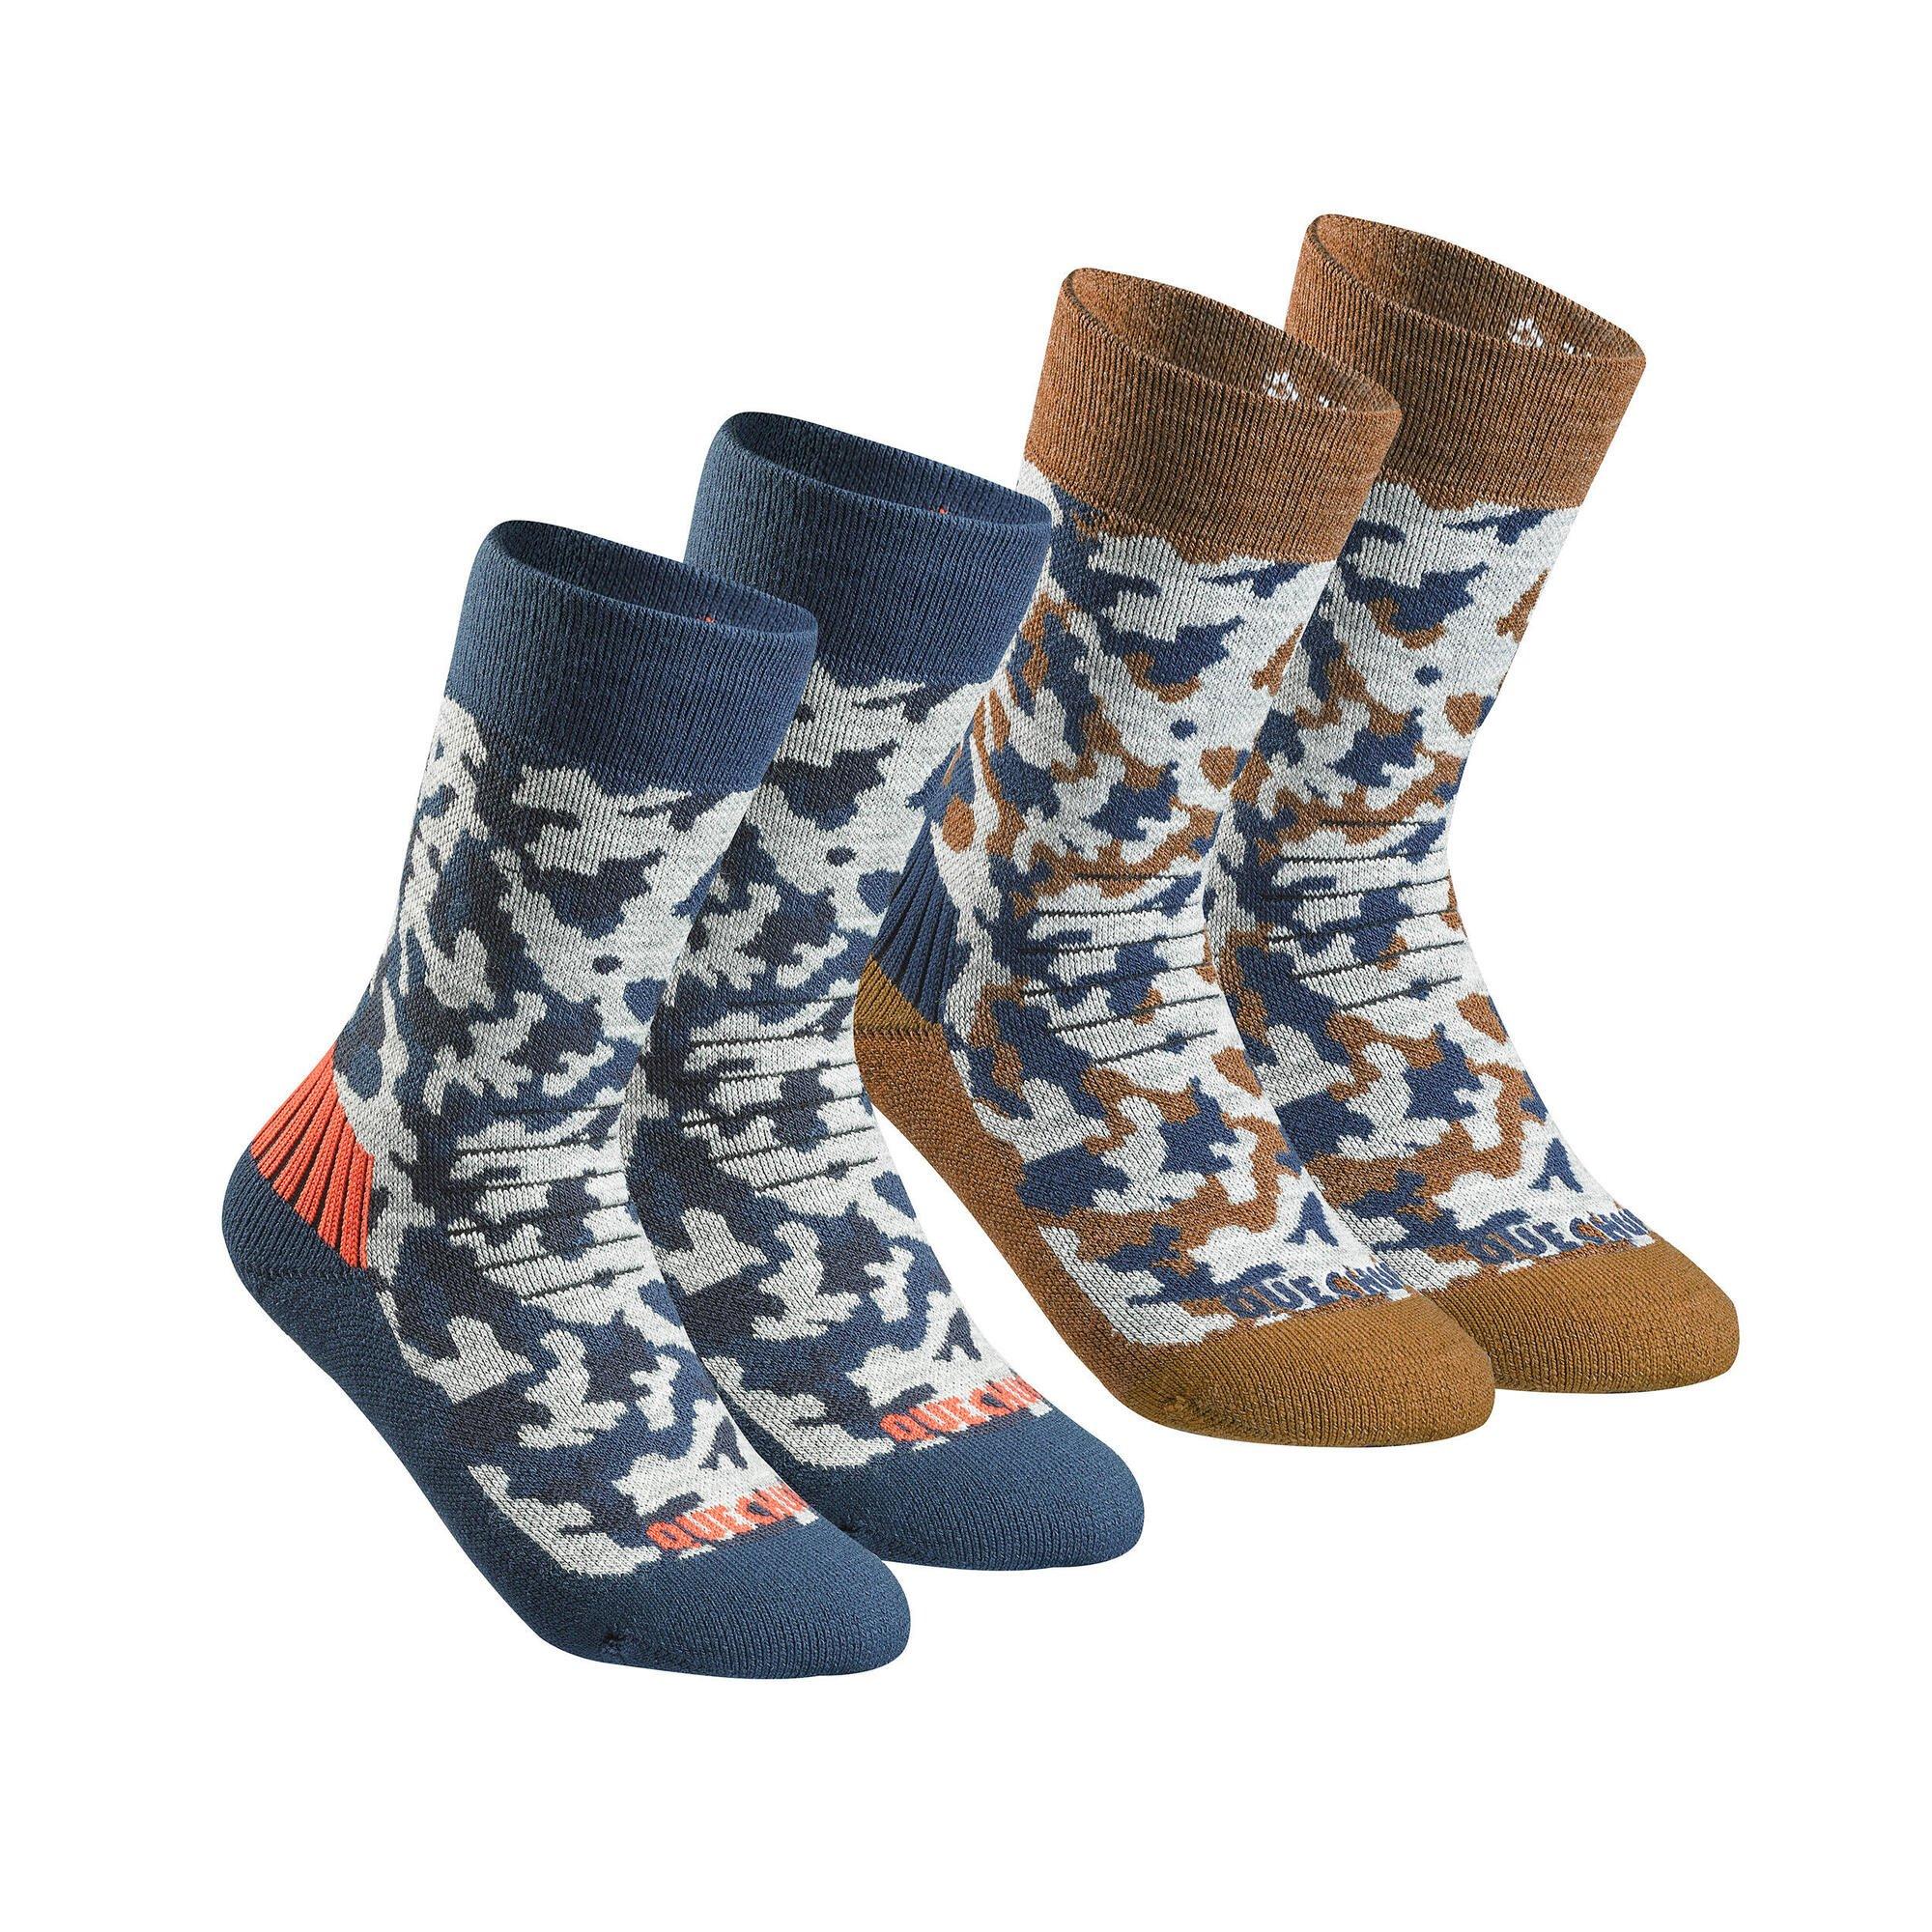 Теплые походные носки Decathlon Quechua, мультиколор походные носки теплые высокие 2 пары зимние походные sh100 quechua цвет schwarz